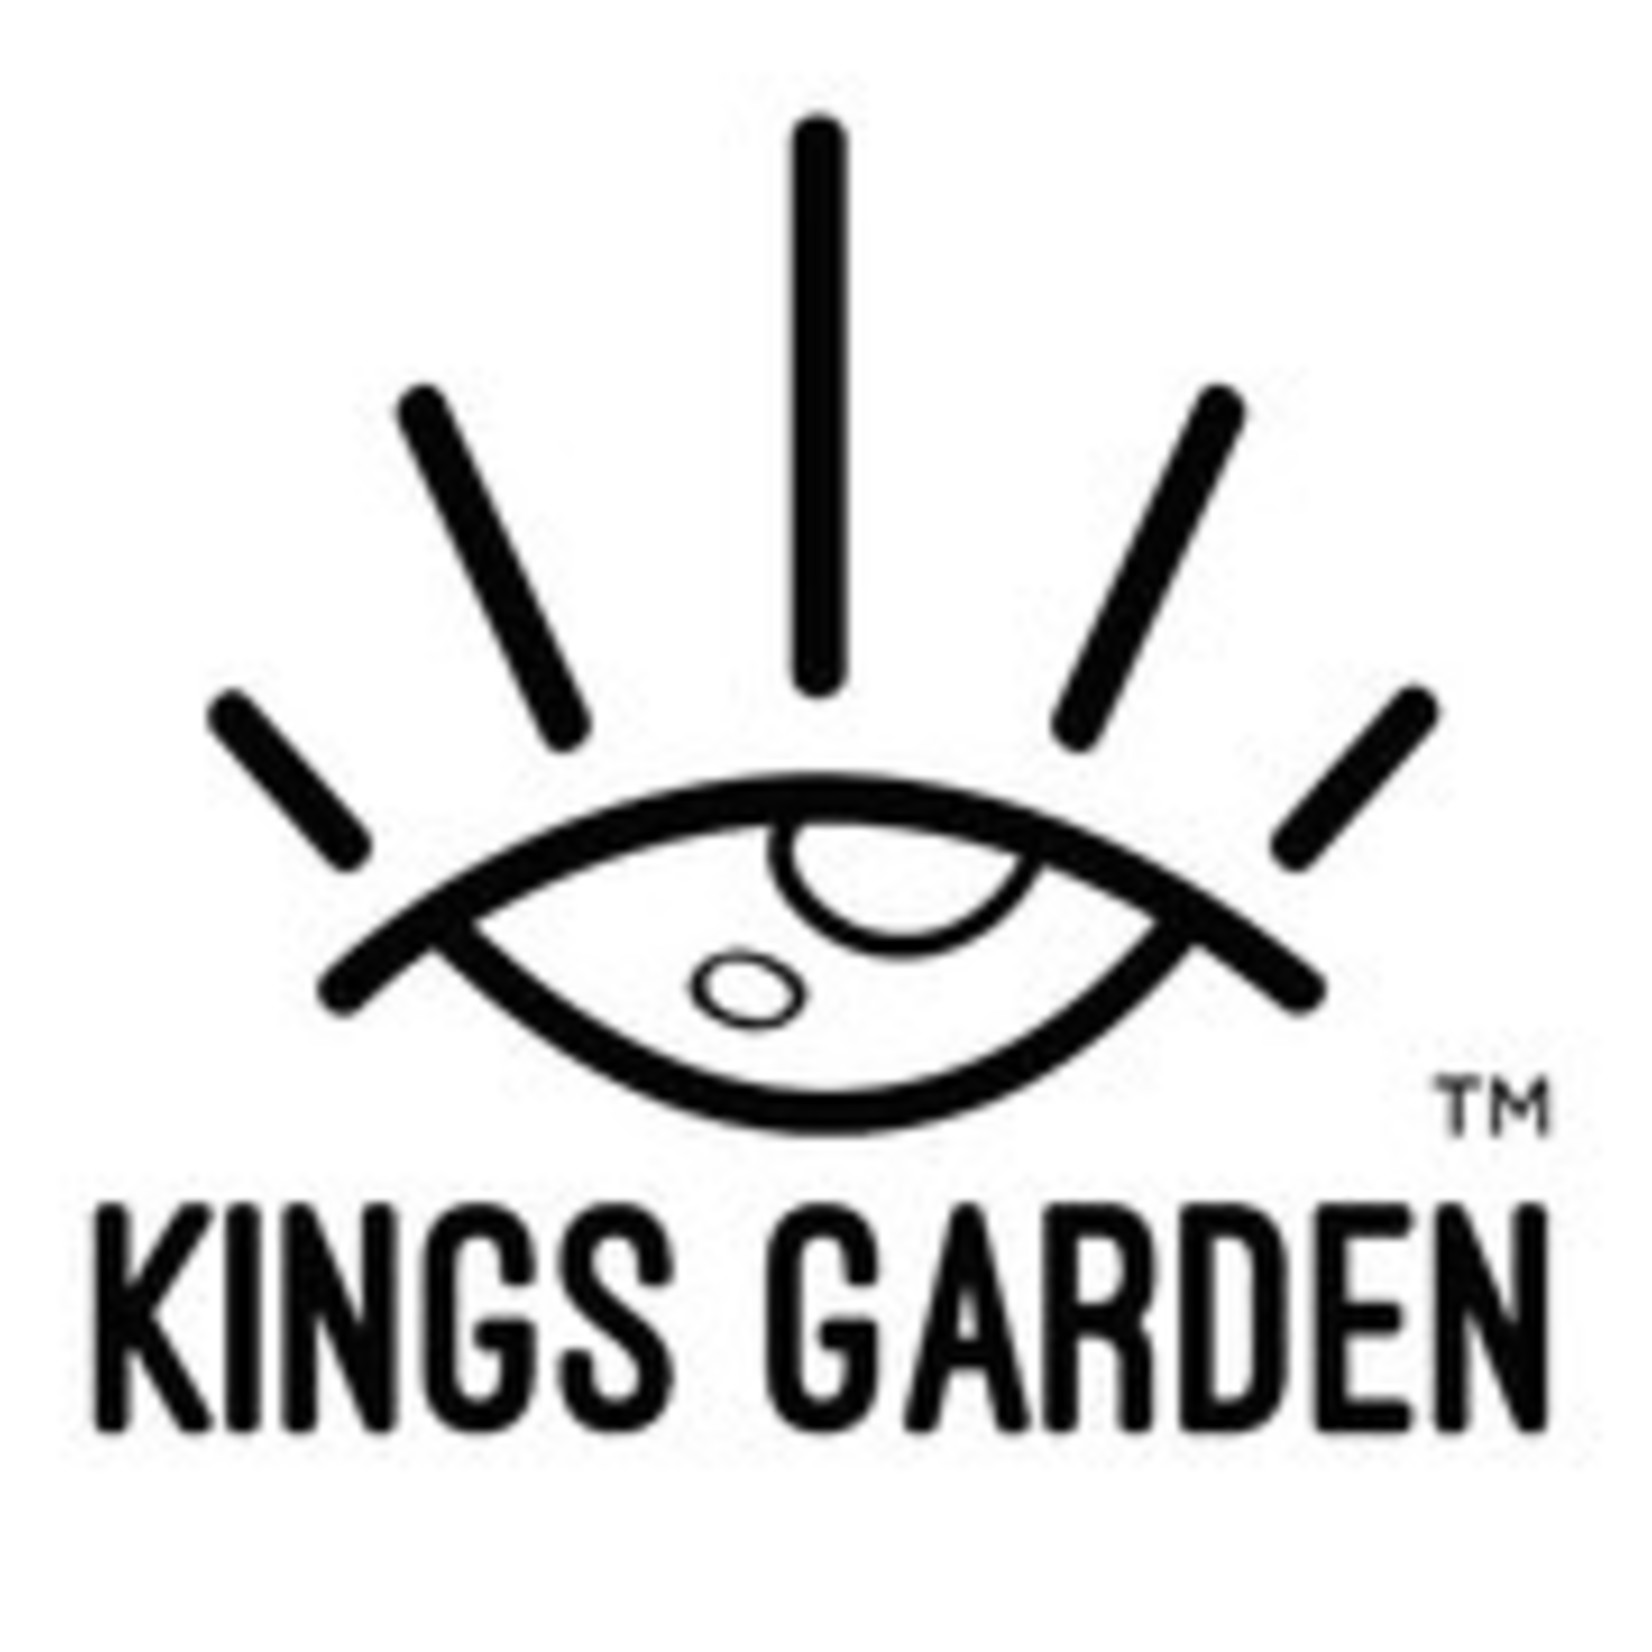 Kings Garden - OG King